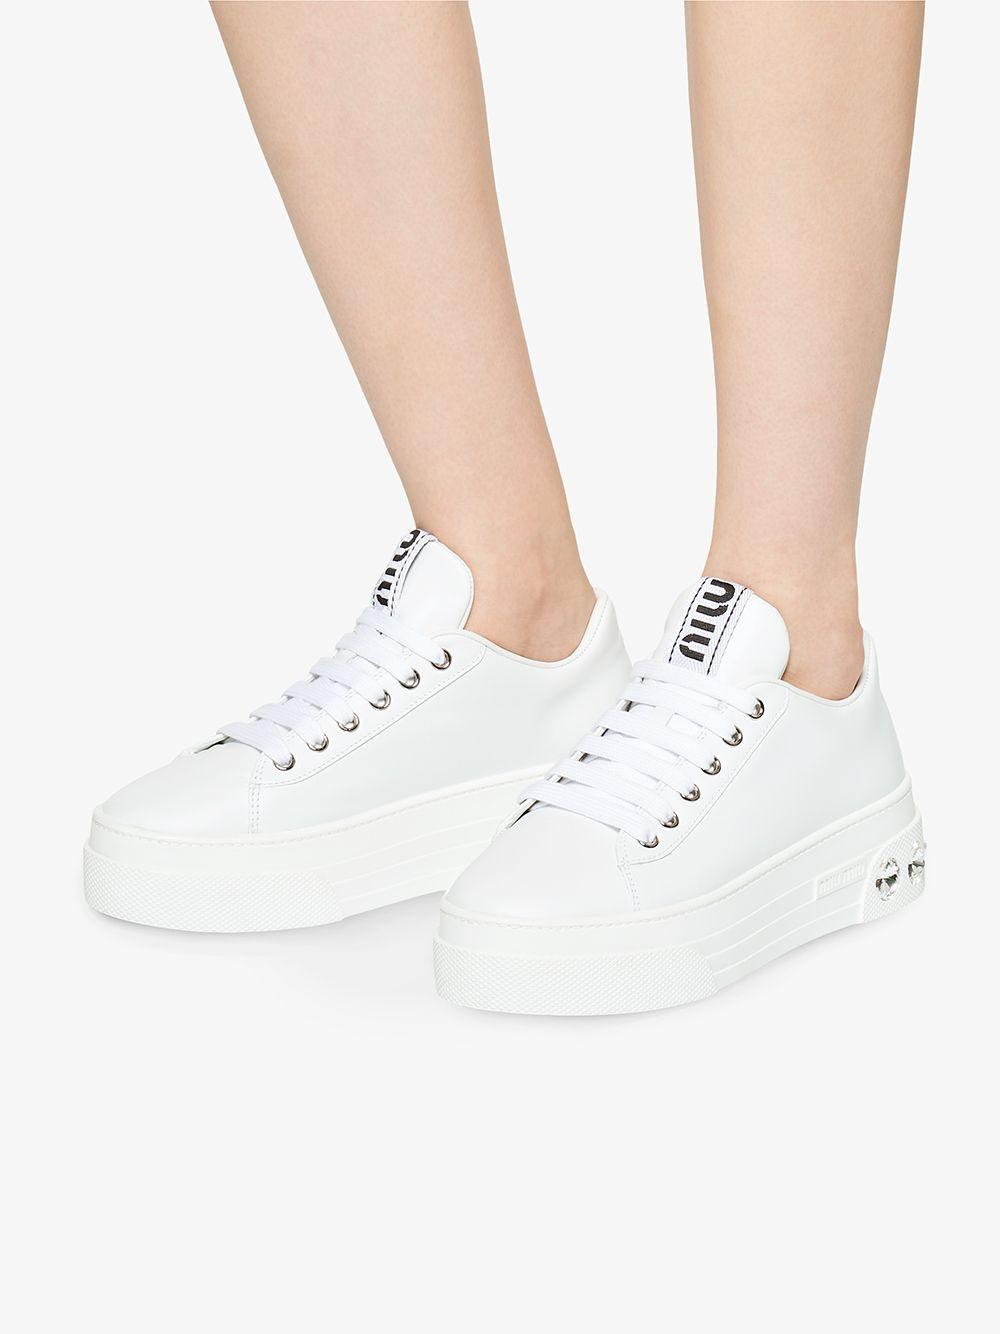 Miu Miu Sneakers White | Lyst